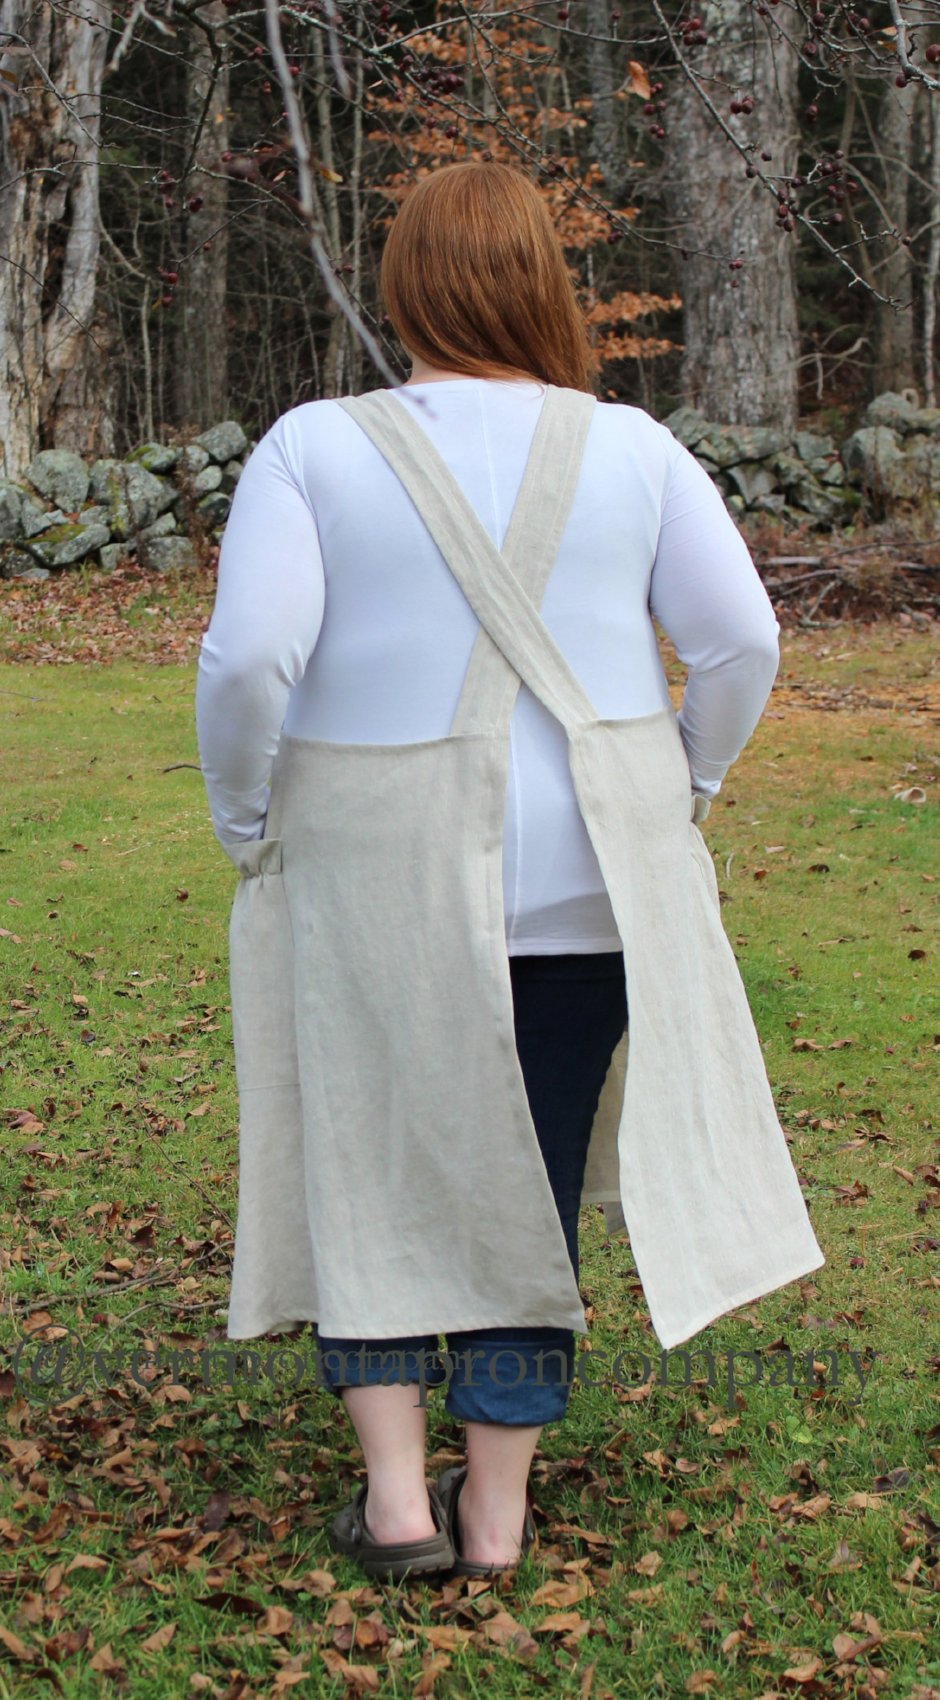 Linen cross back apron. Short harvest apron with braces